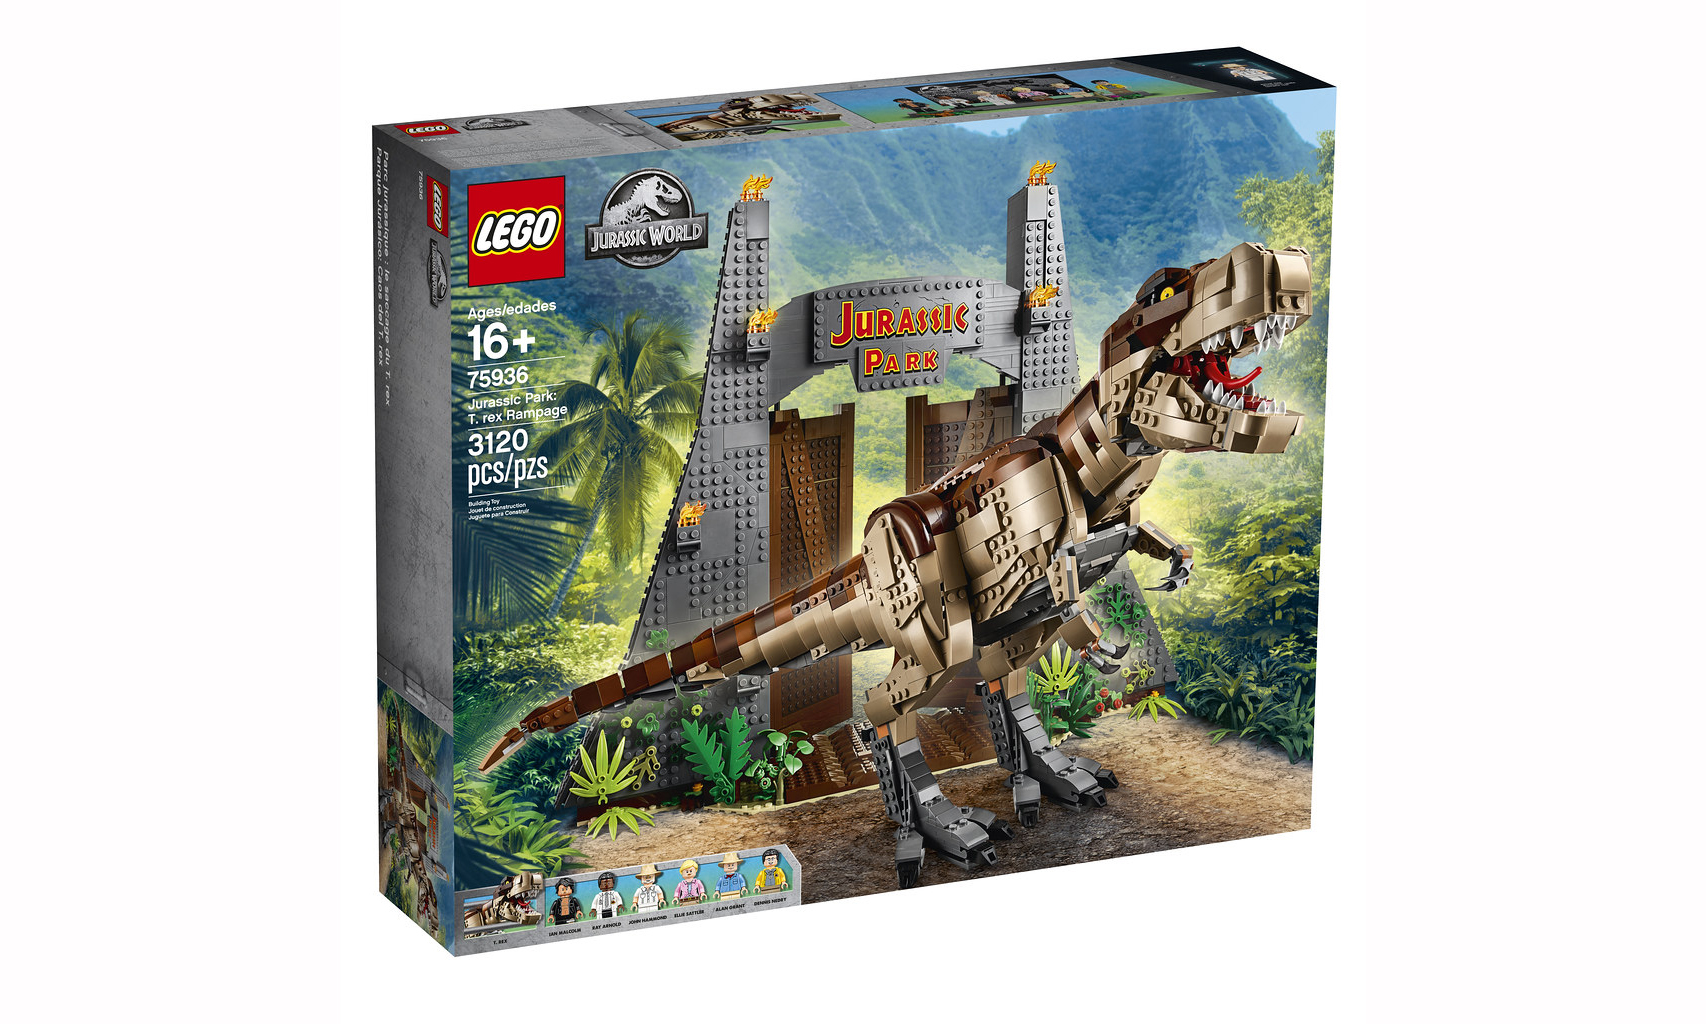 LEGO 发布《侏罗纪公园》主题霸王龙盒组